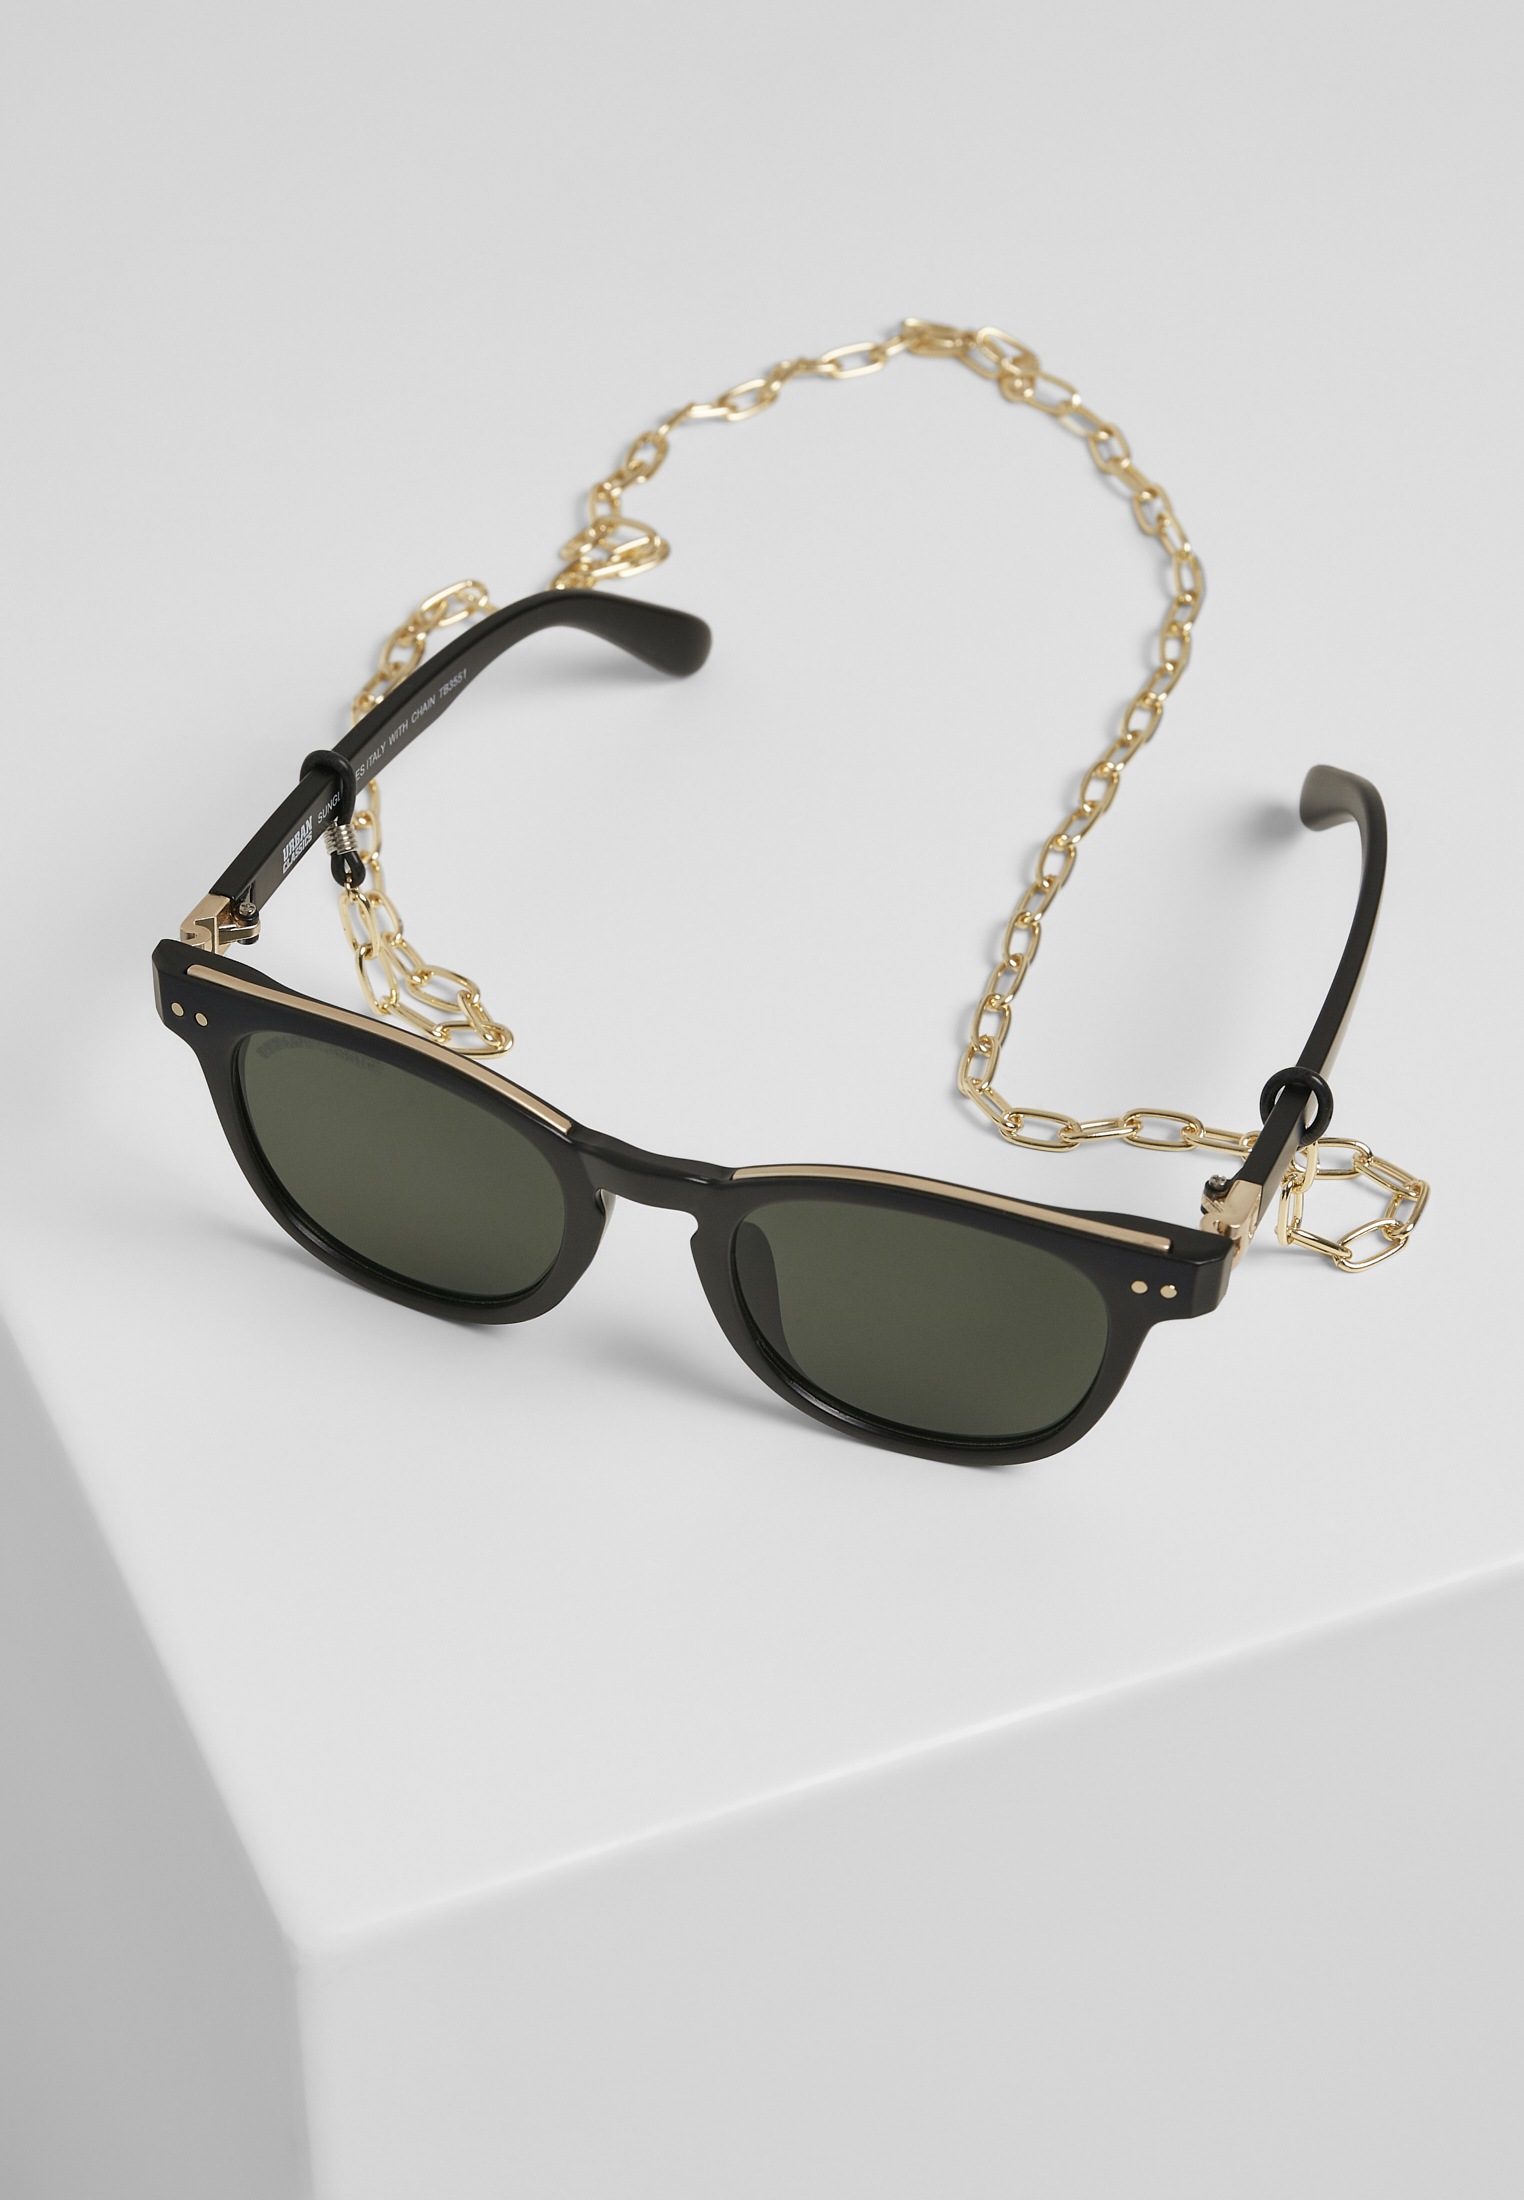 Sunglasses bestellen | »Unisex Sonnenbrille URBAN CLASSICS chain« with Italy BAUR online